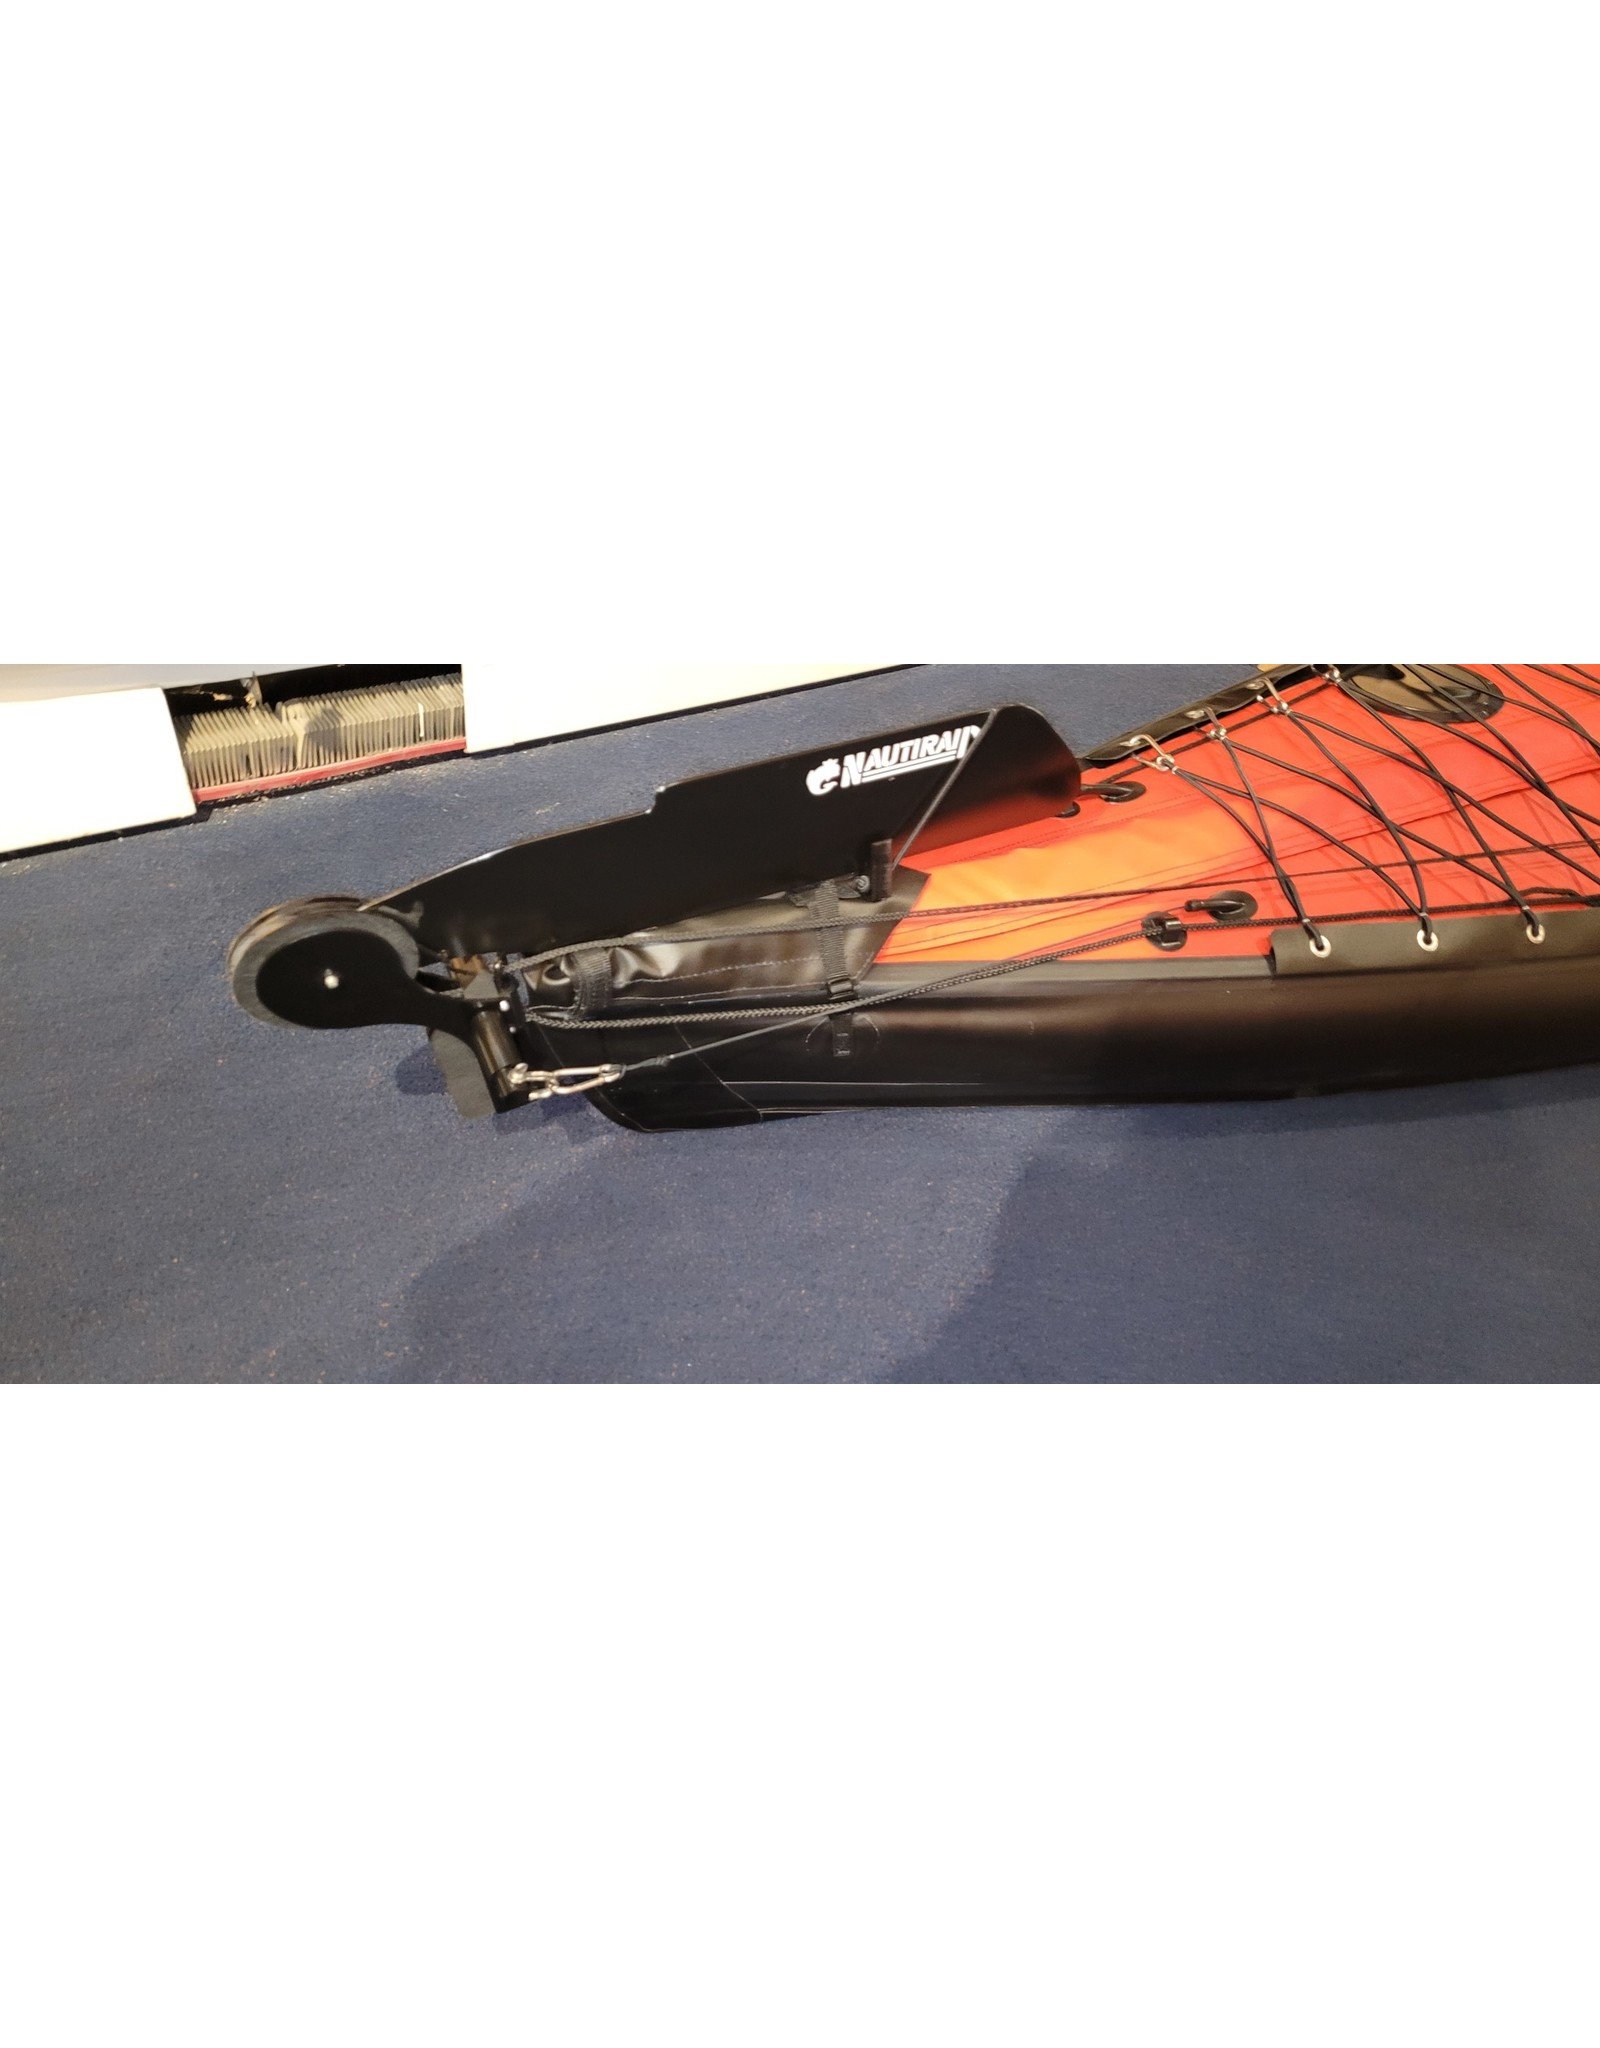 Nautiraid Nautiraid kayak NARAK CROSS 475 PVC Alu Tandem Red